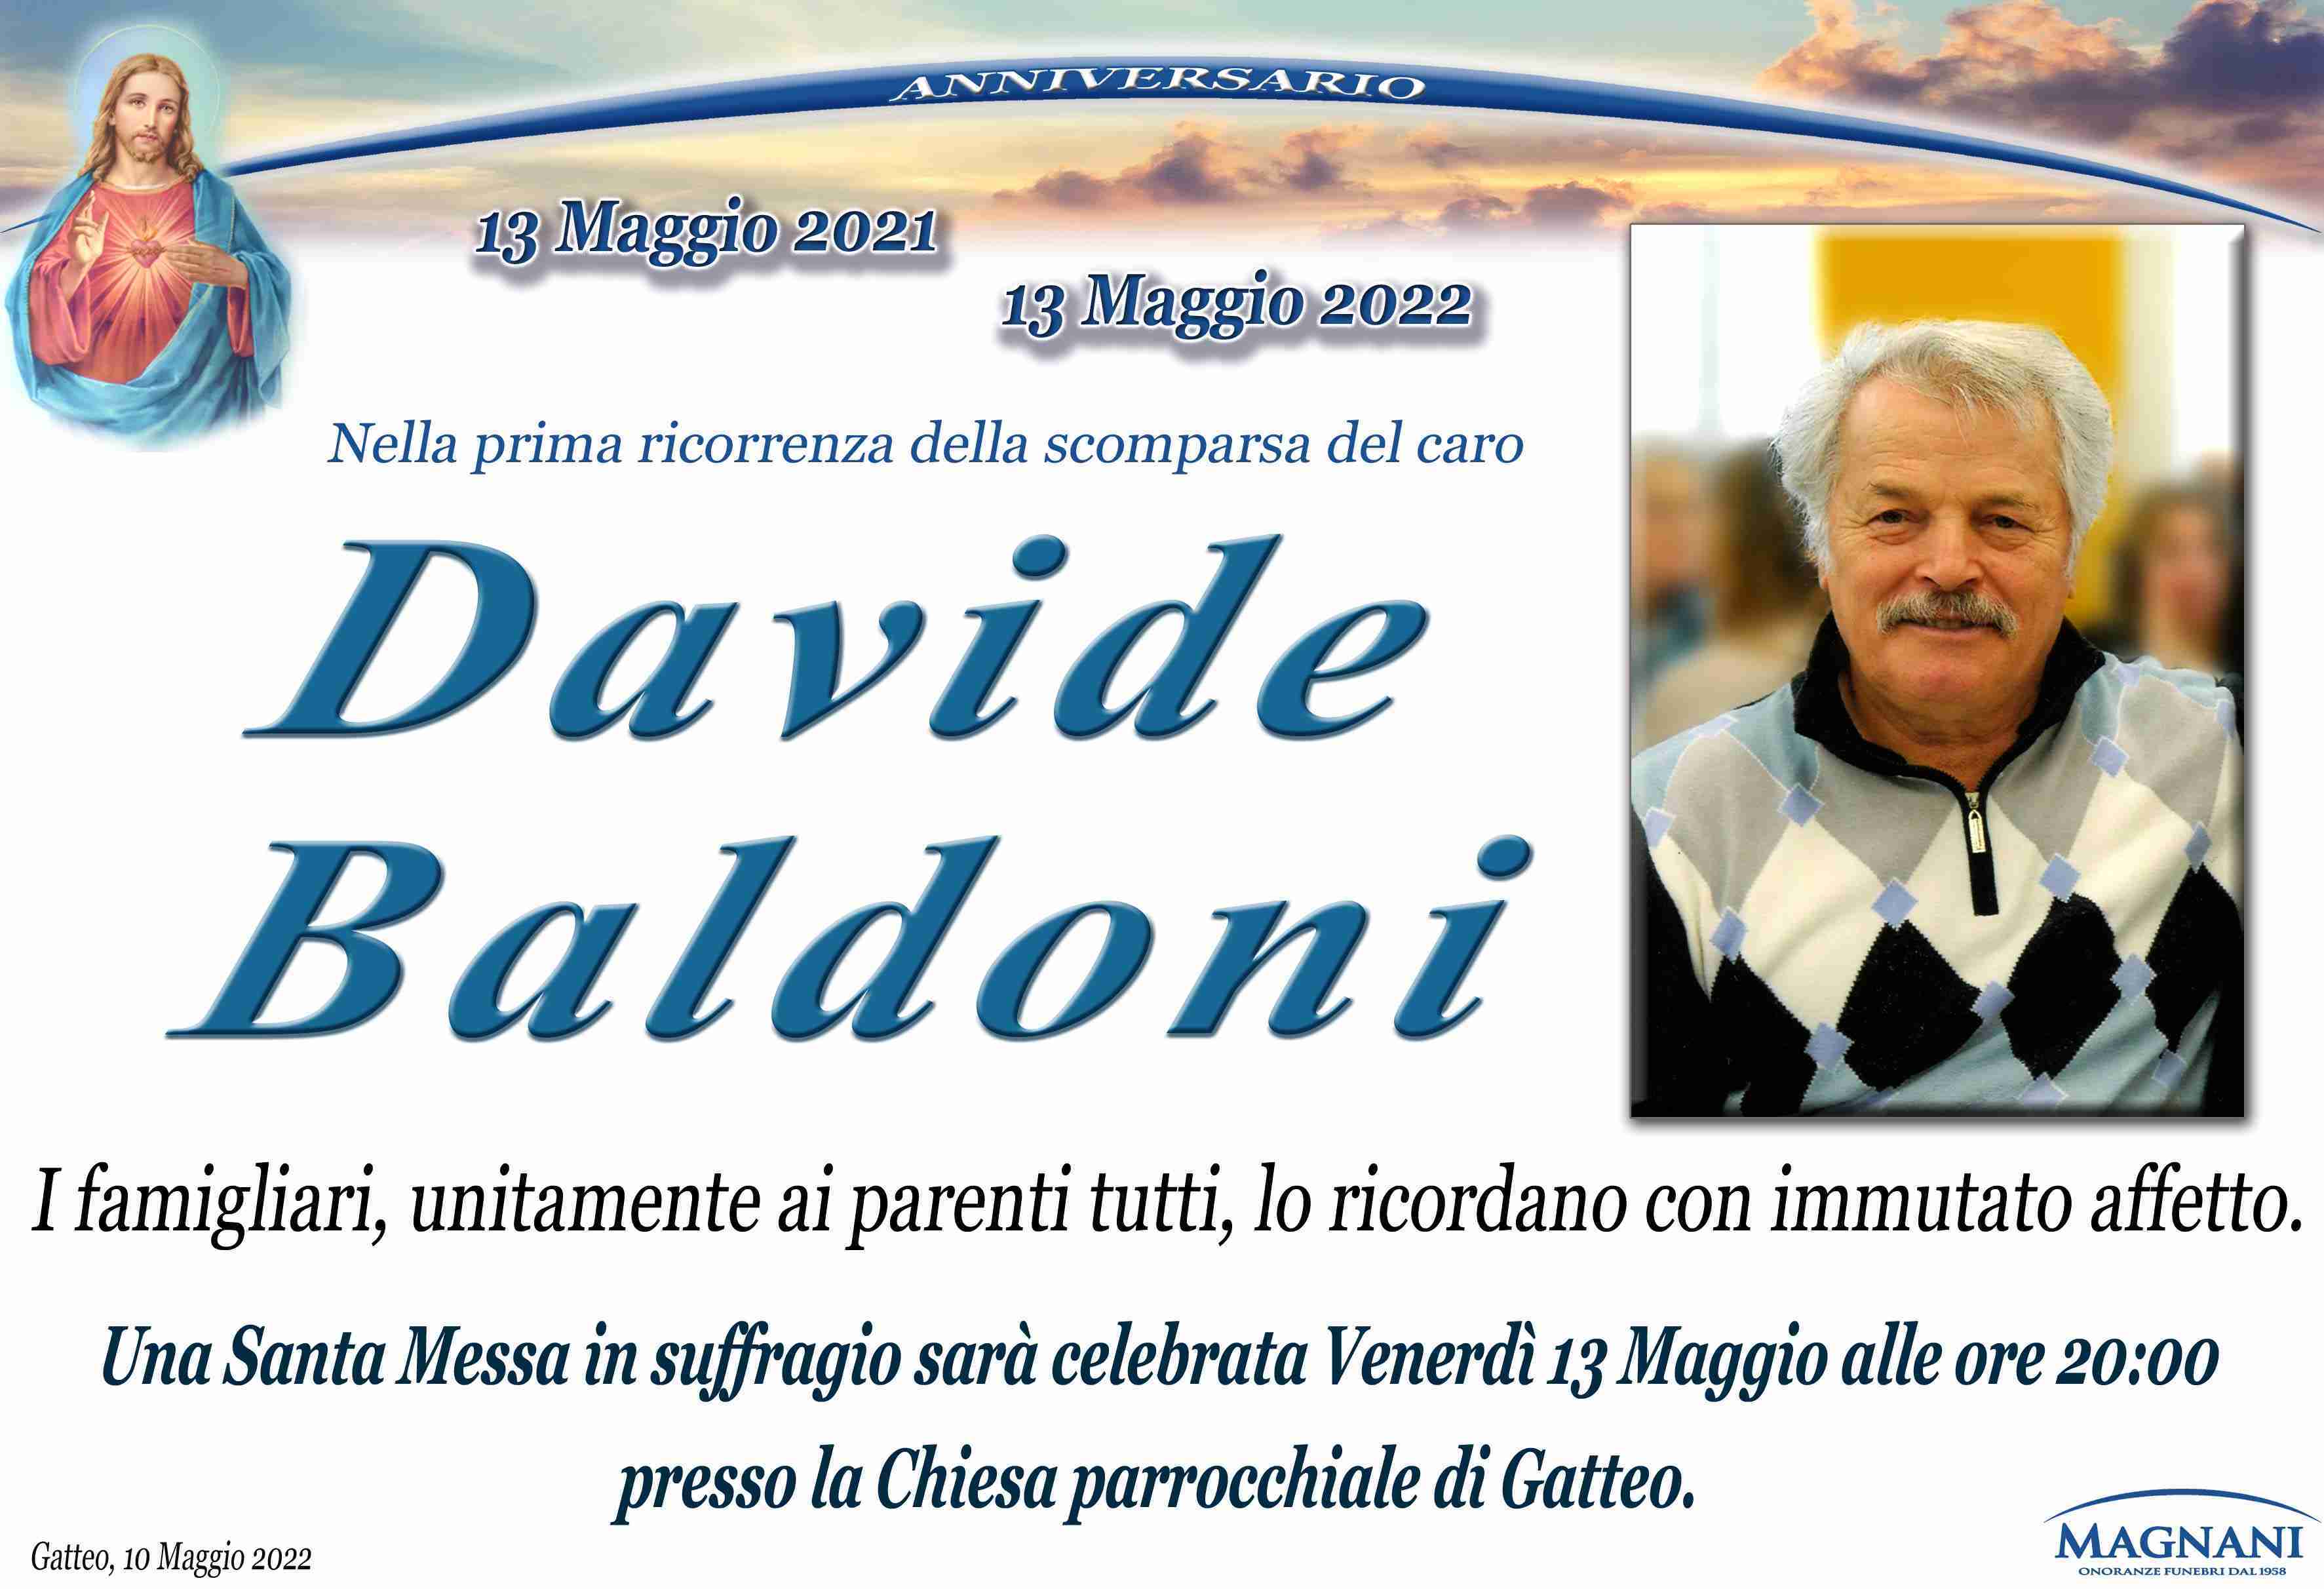 Davide Baldoni